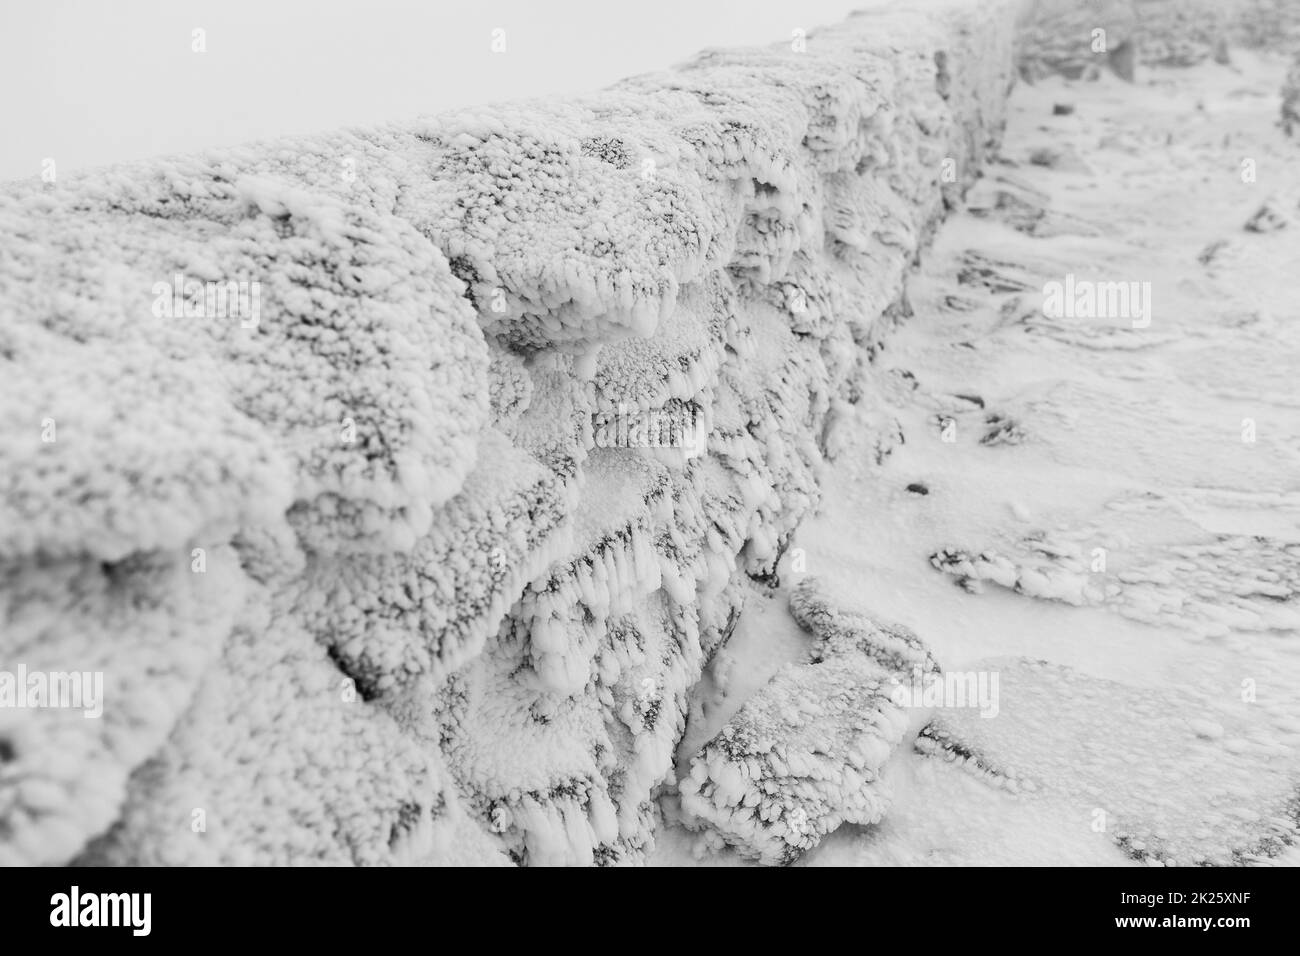 Une clôture en pierre recouverte de glace et de neige.Mise au point au premier plan.Noir et blanc. Banque D'Images